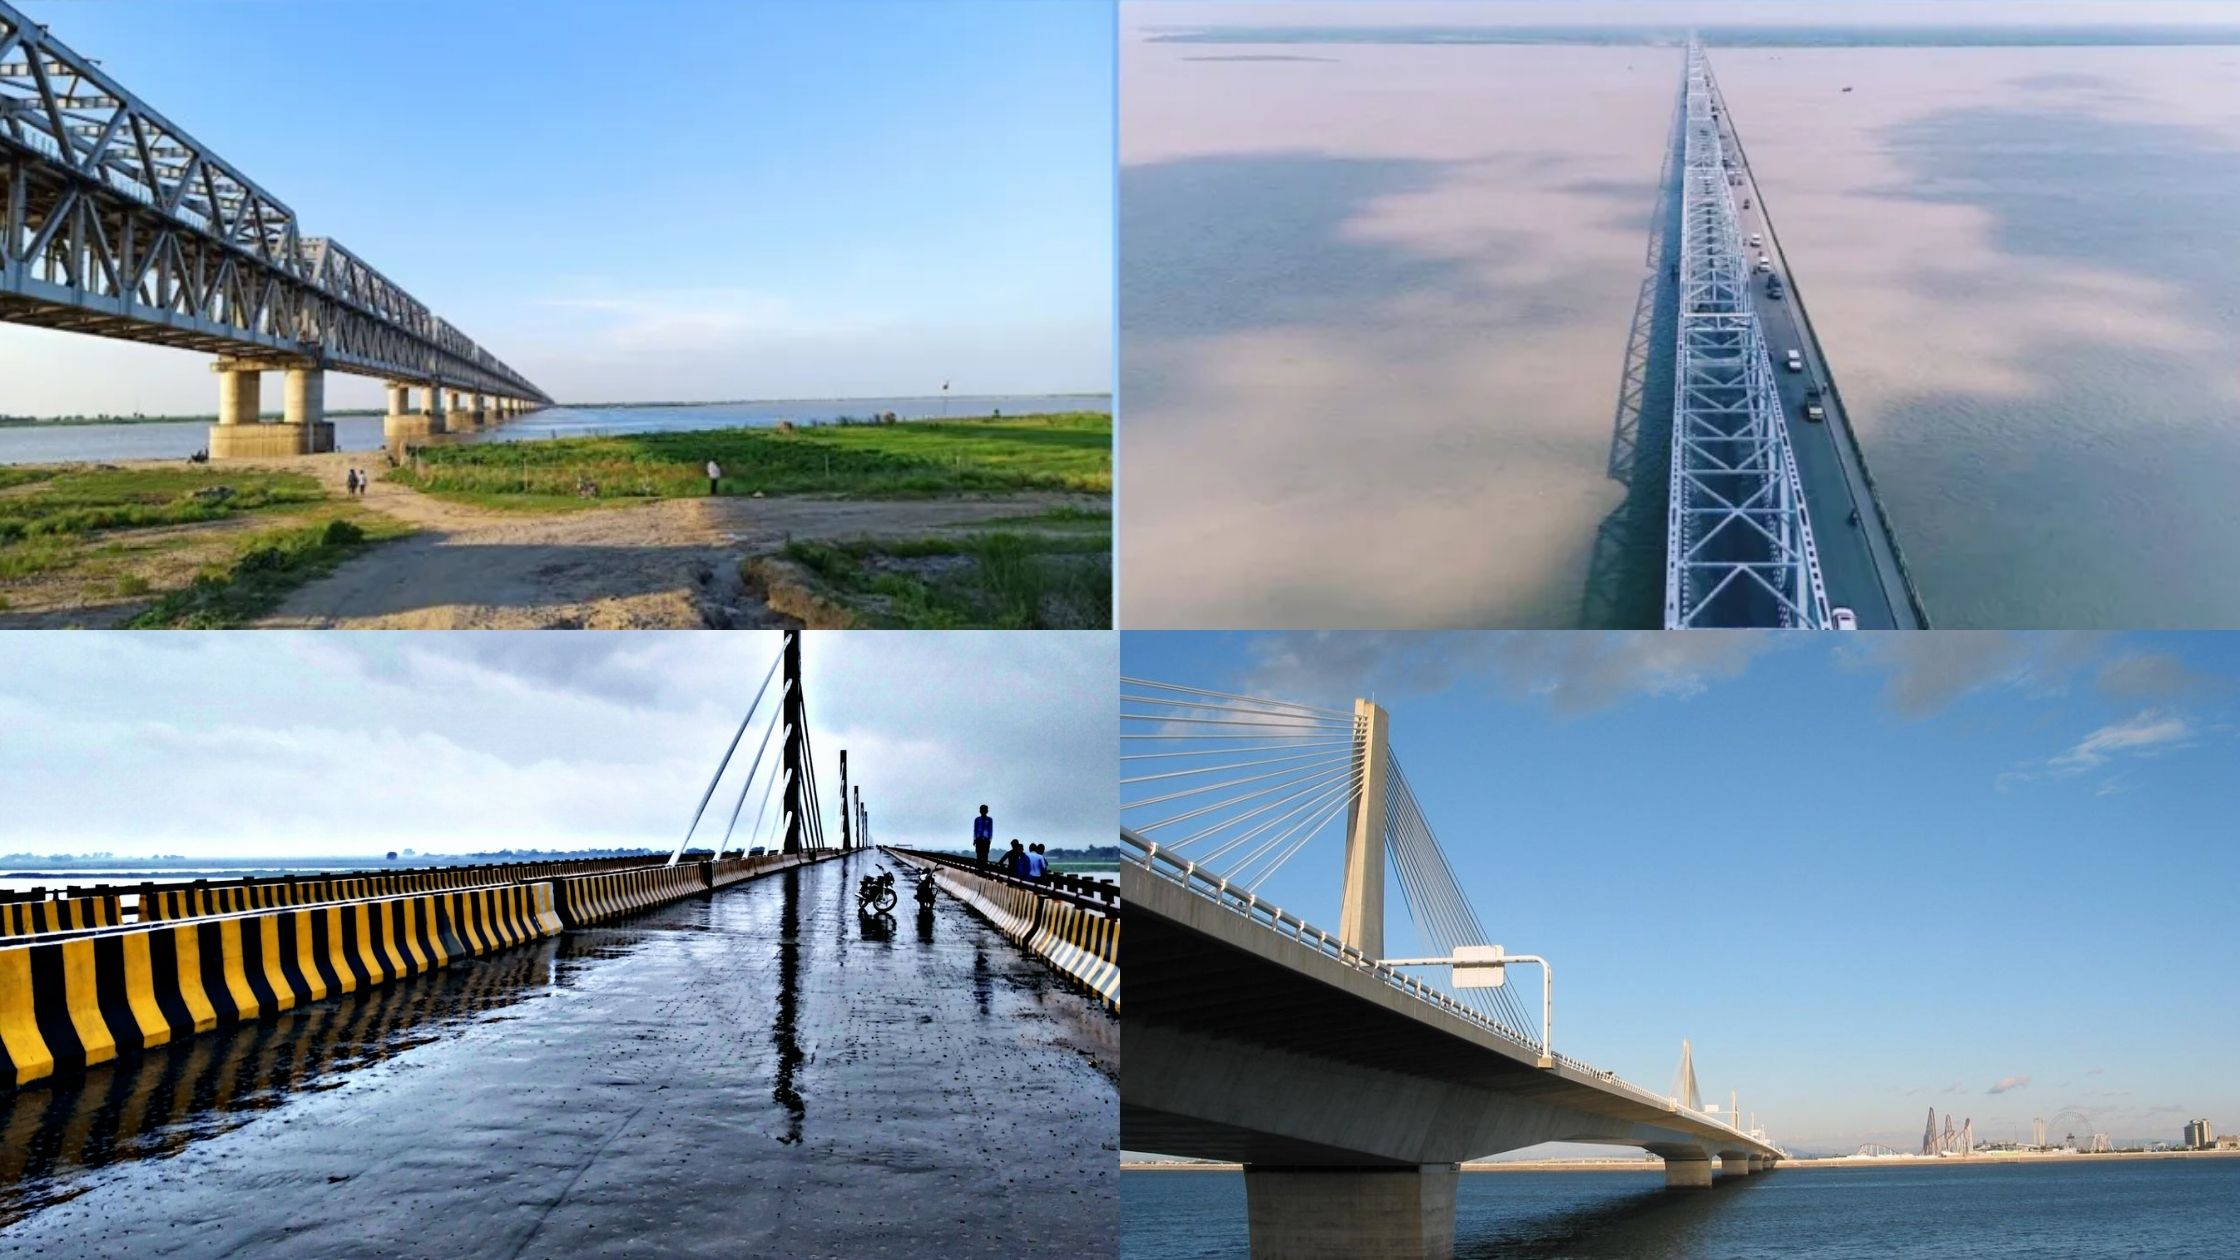 18 bridges over the Ganges river in Bihar